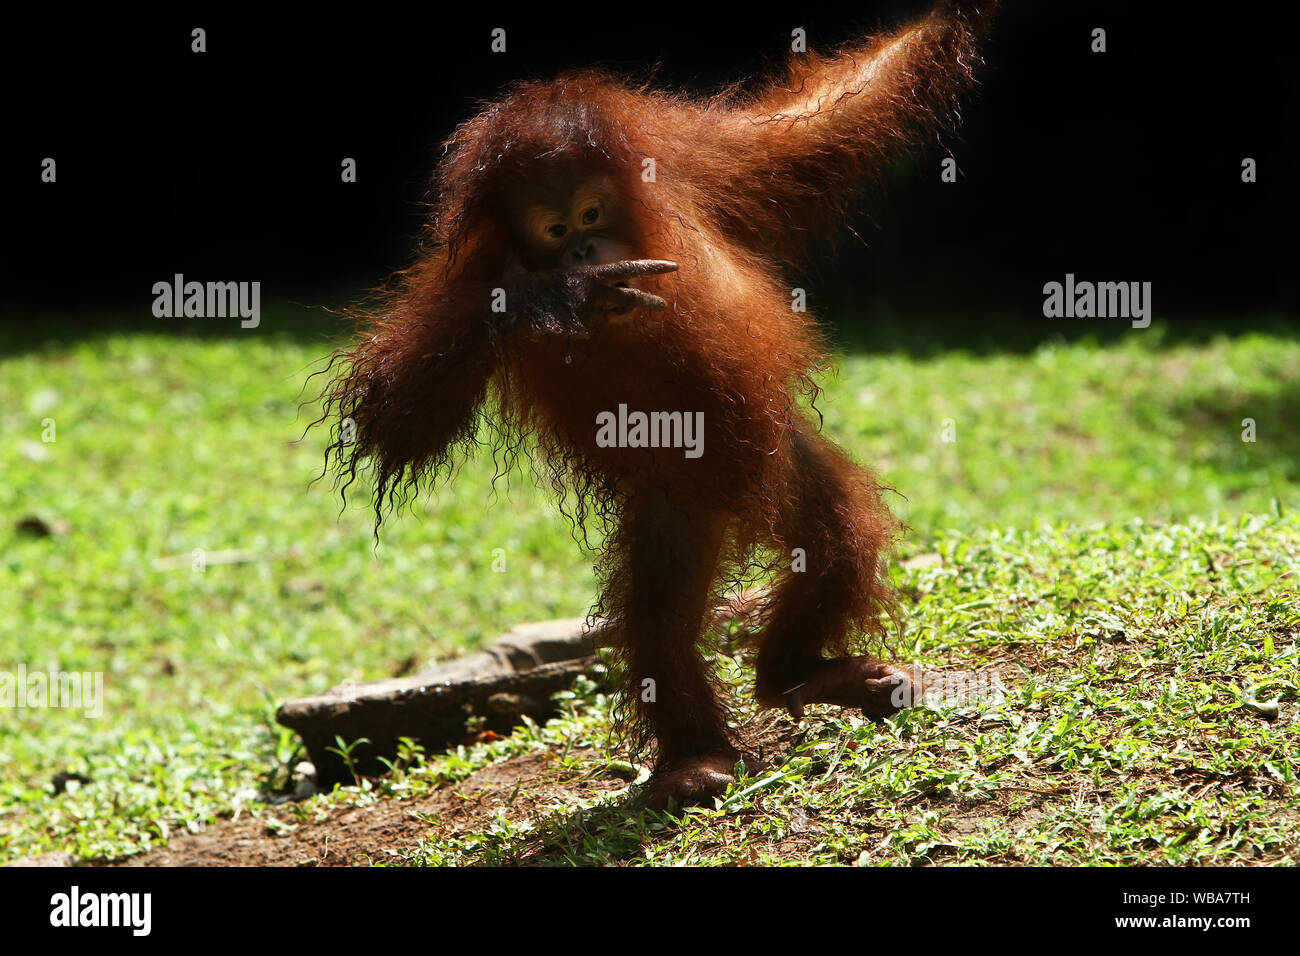 primates Stock Photo